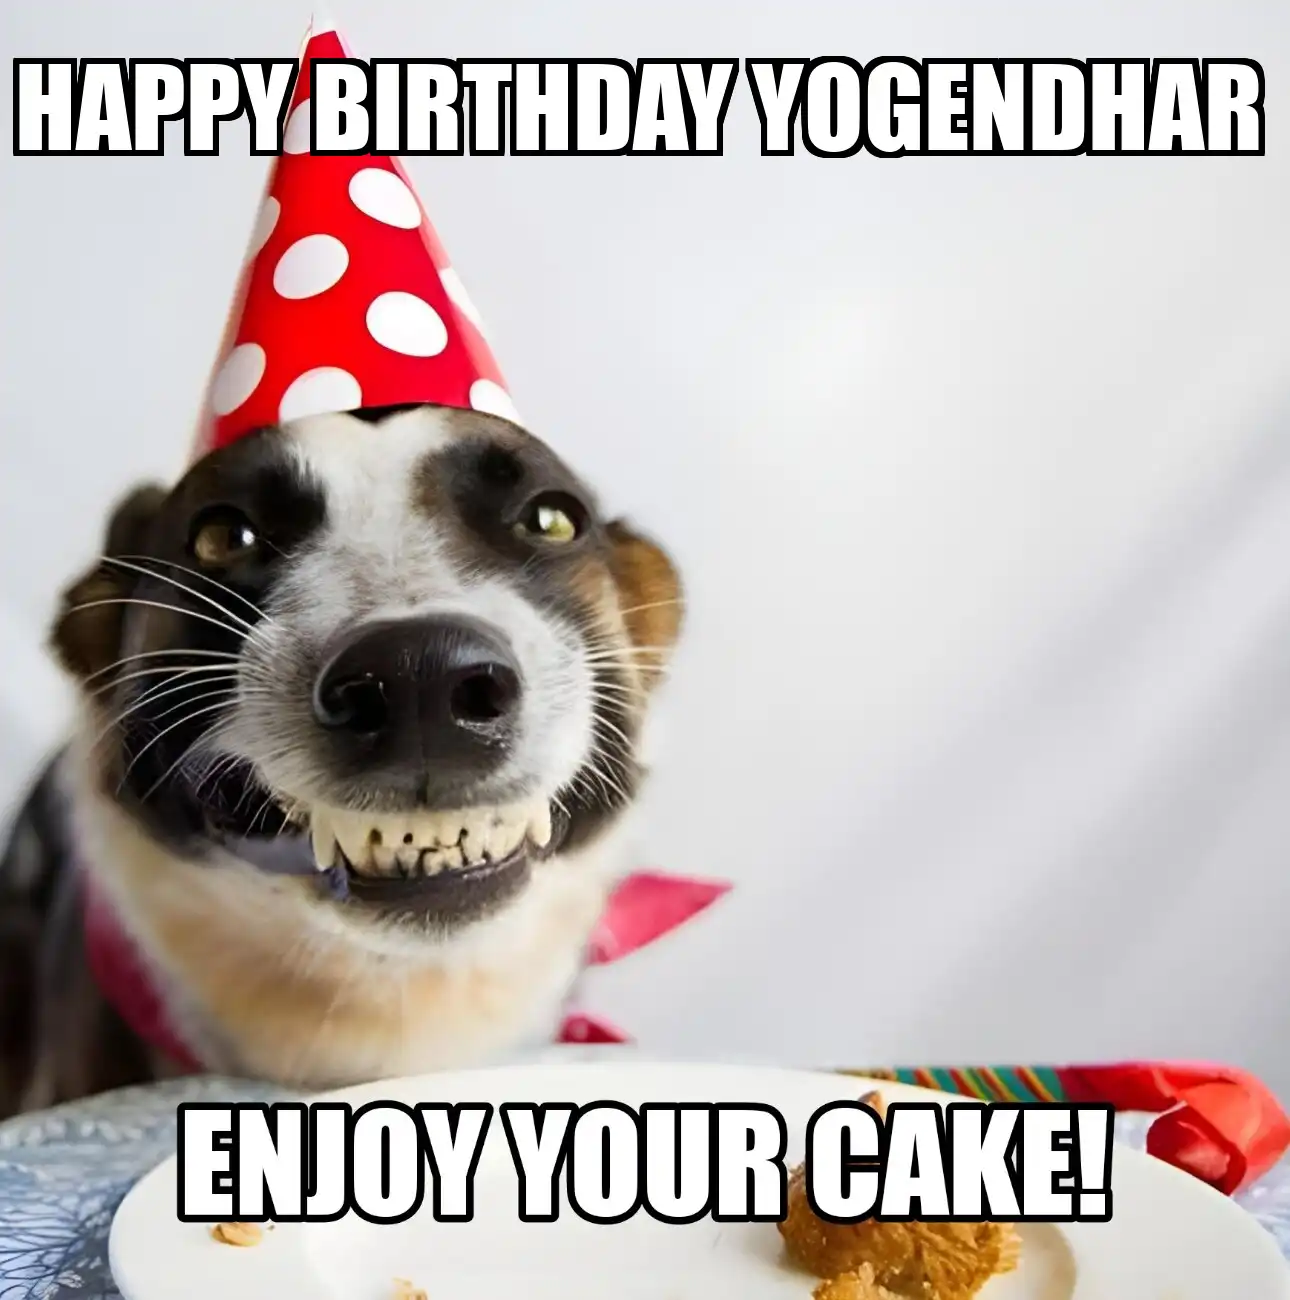 Happy Birthday Yogendhar Enjoy Your Cake Dog Meme